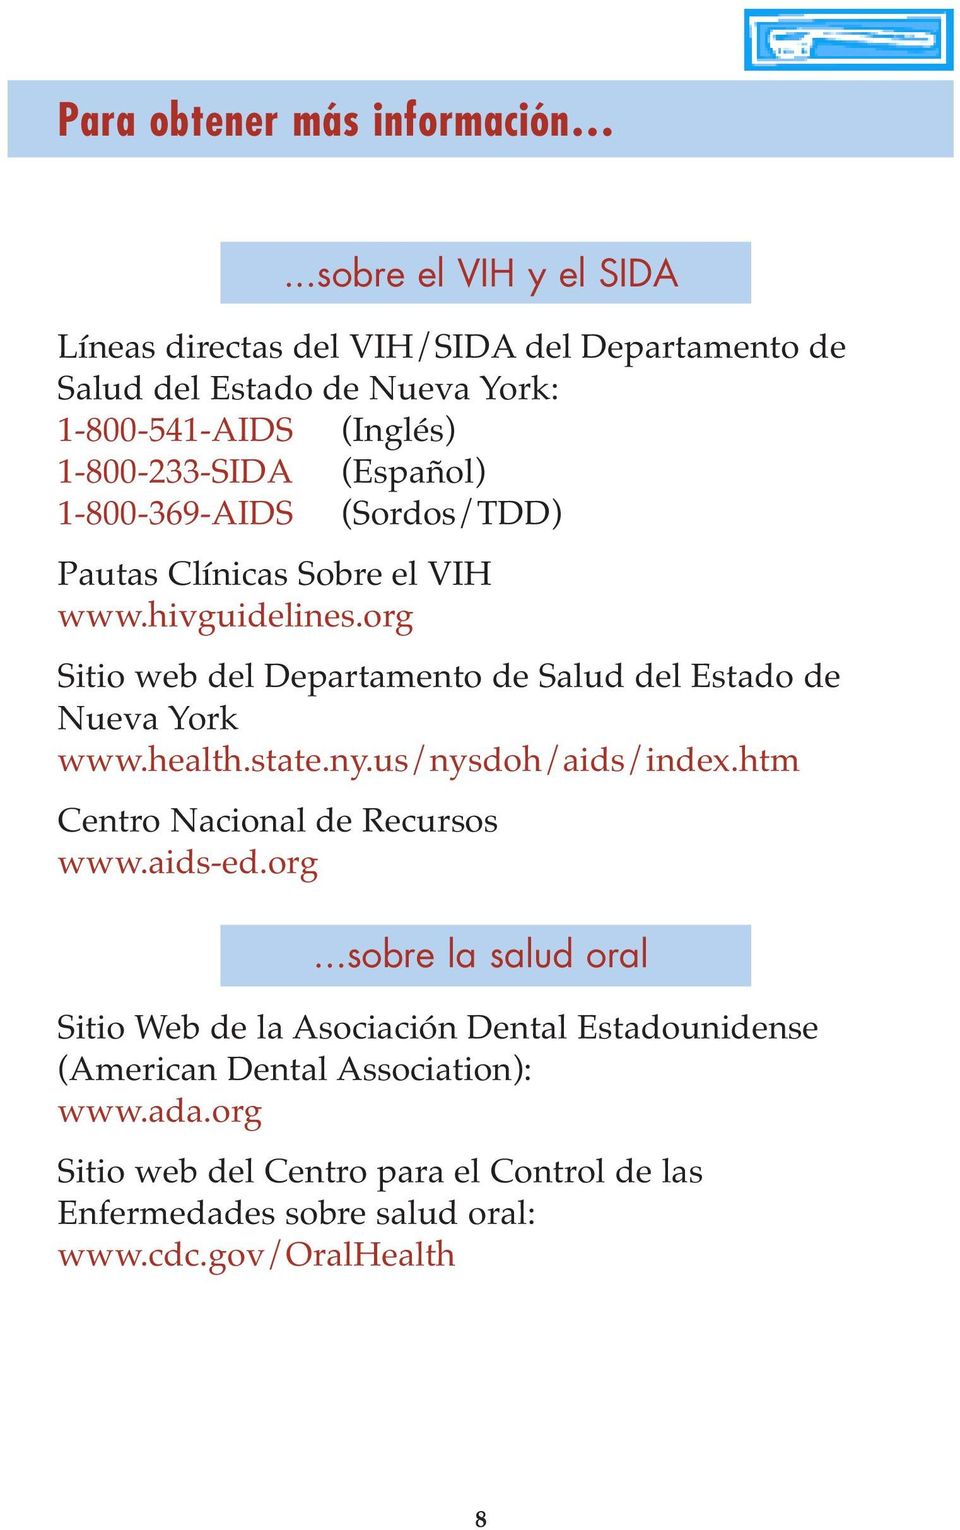 1-800-369-AIDS (Sordos/TDD) Pautas Clínicas Sobre el VIH www.hivguidelines.org Sitio web del Departamento de Salud del Estado de Nueva York www.health.state.